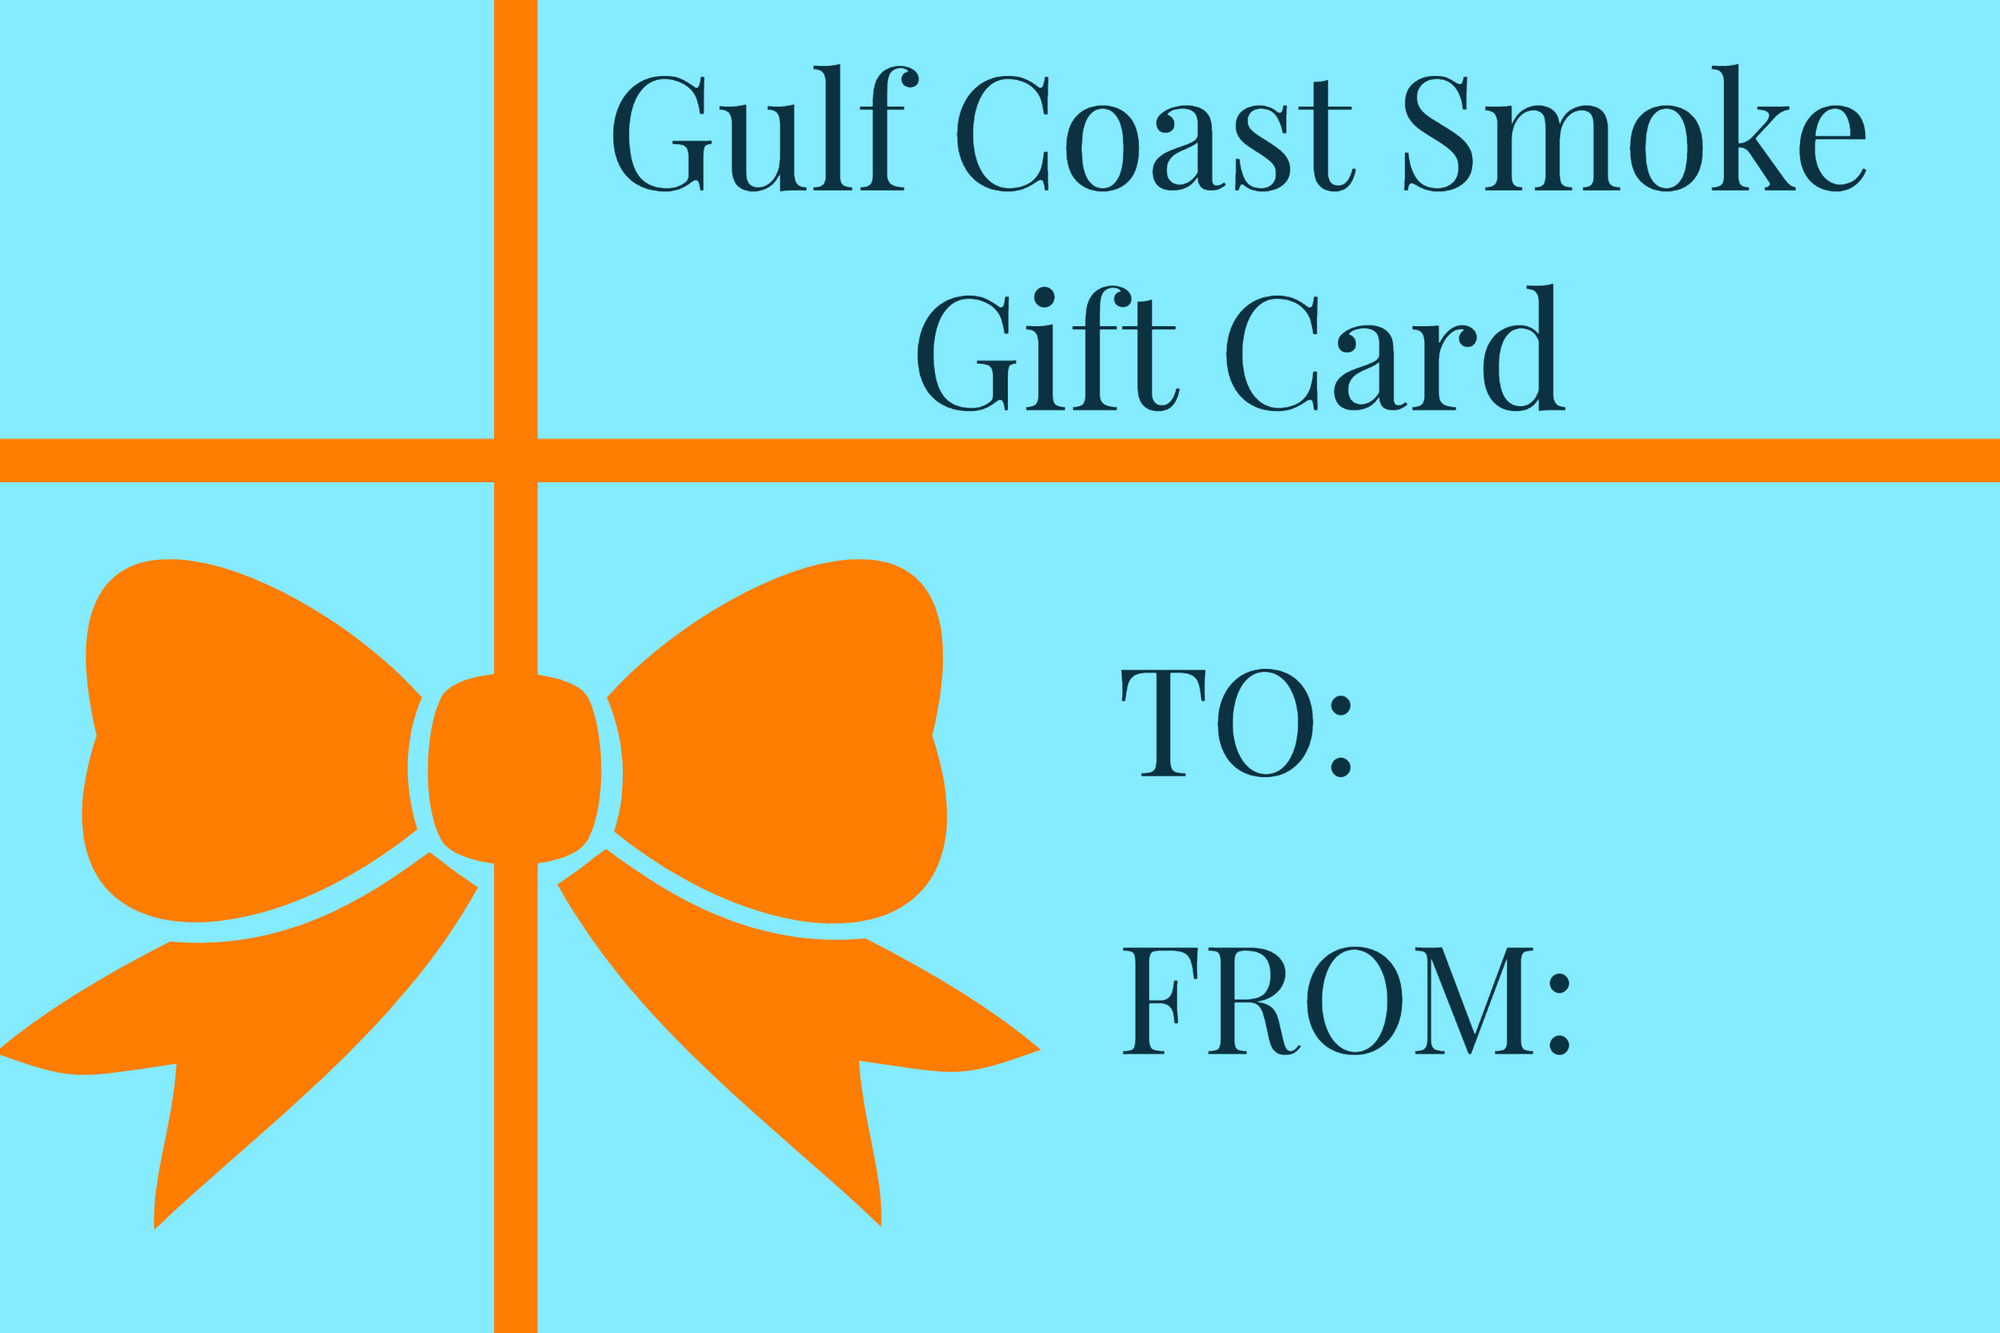 Gulf Coast Smoke Gift Card